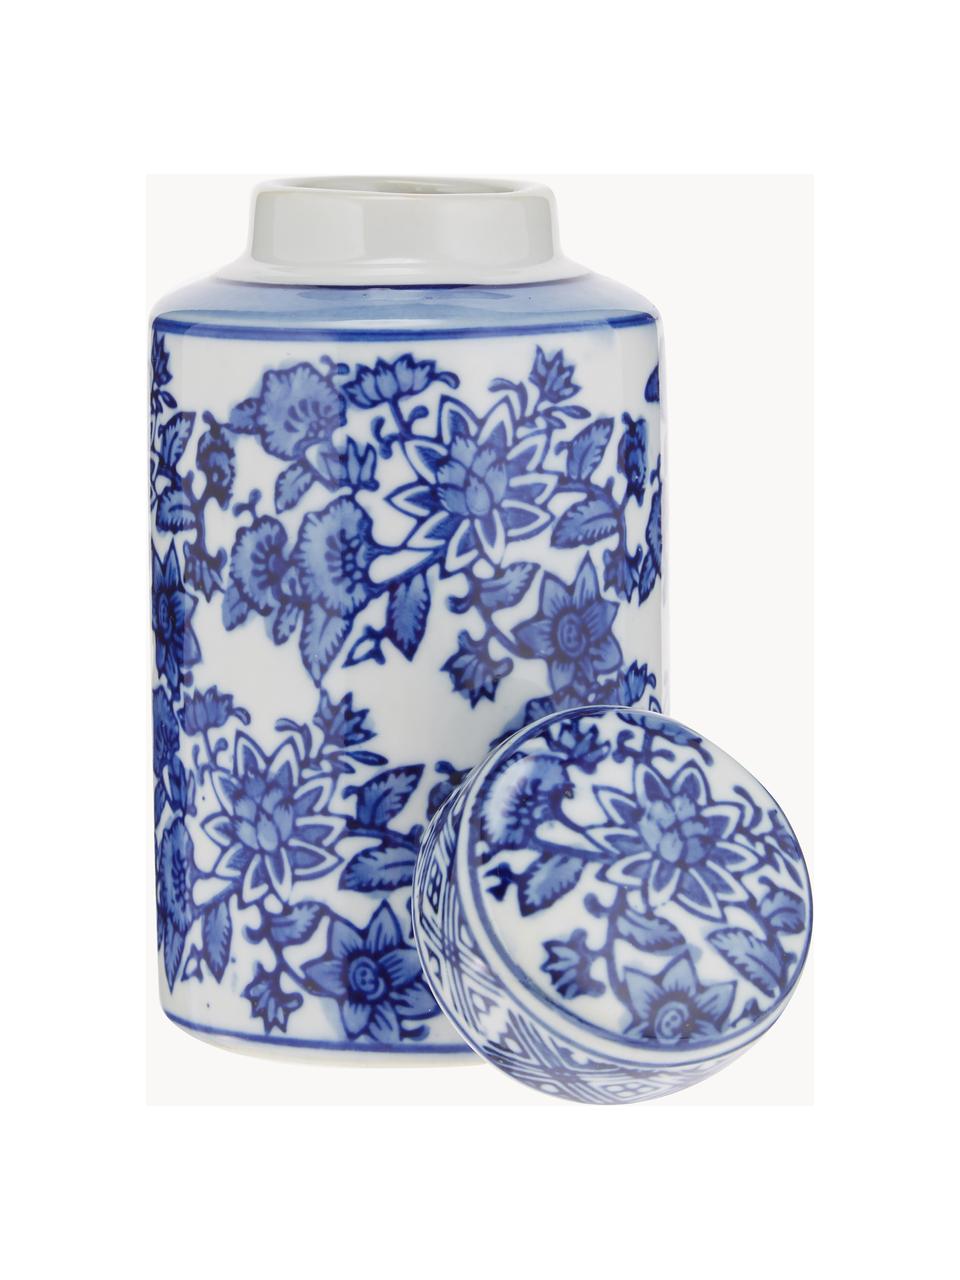 Malá porcelánová váza s víčkem Annabelle, V 14 cm, Porcelán, Modrá, bílá, Ø 8 cm, V 14 cm